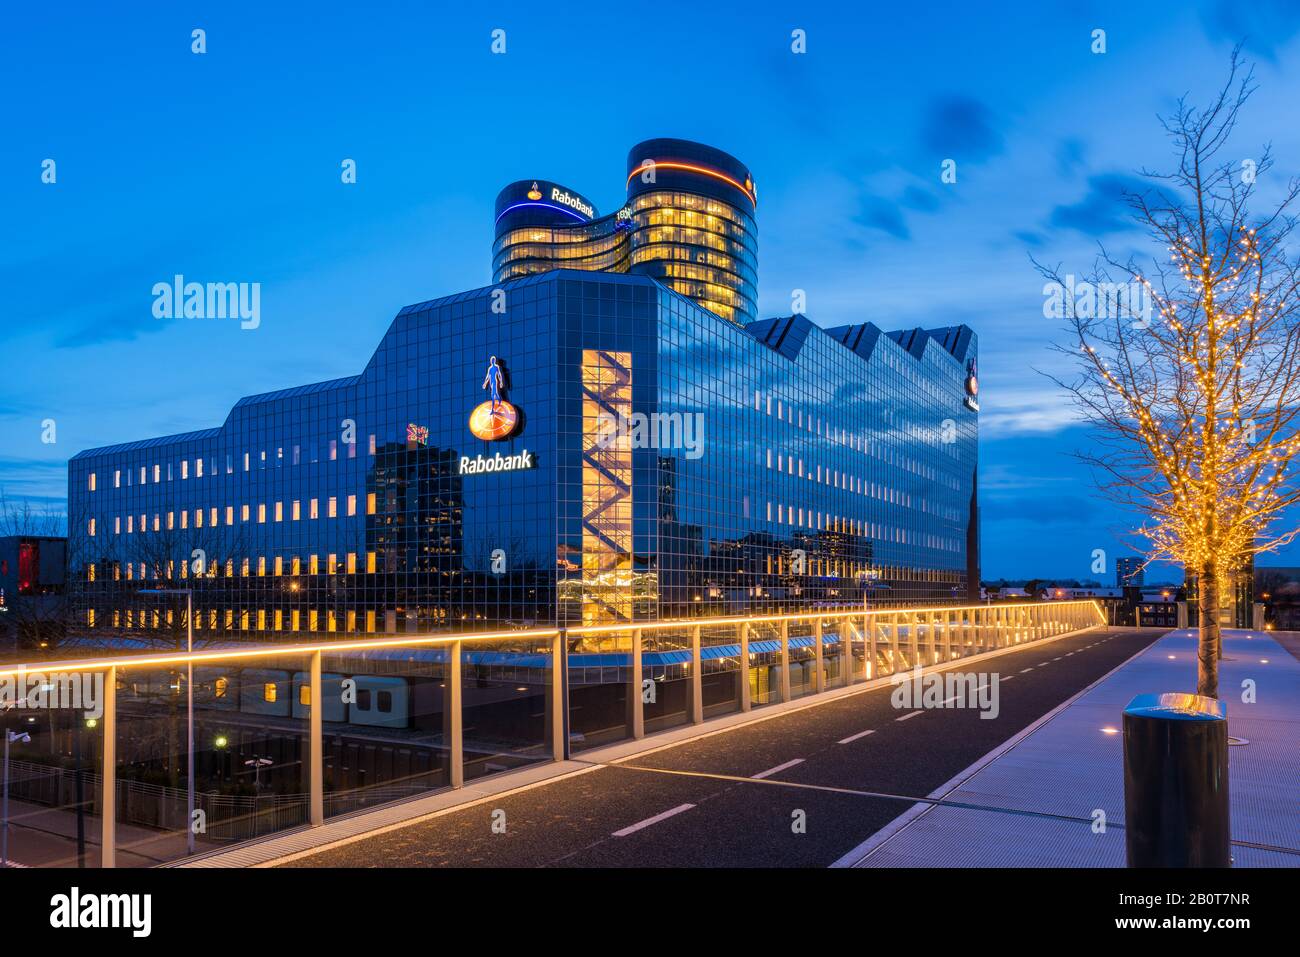 Rabobank Siège Mondial À Utrecht, Pays-Bas. Rabobank est une multinationale néerlandaise de services bancaires et financiers. Banque D'Images